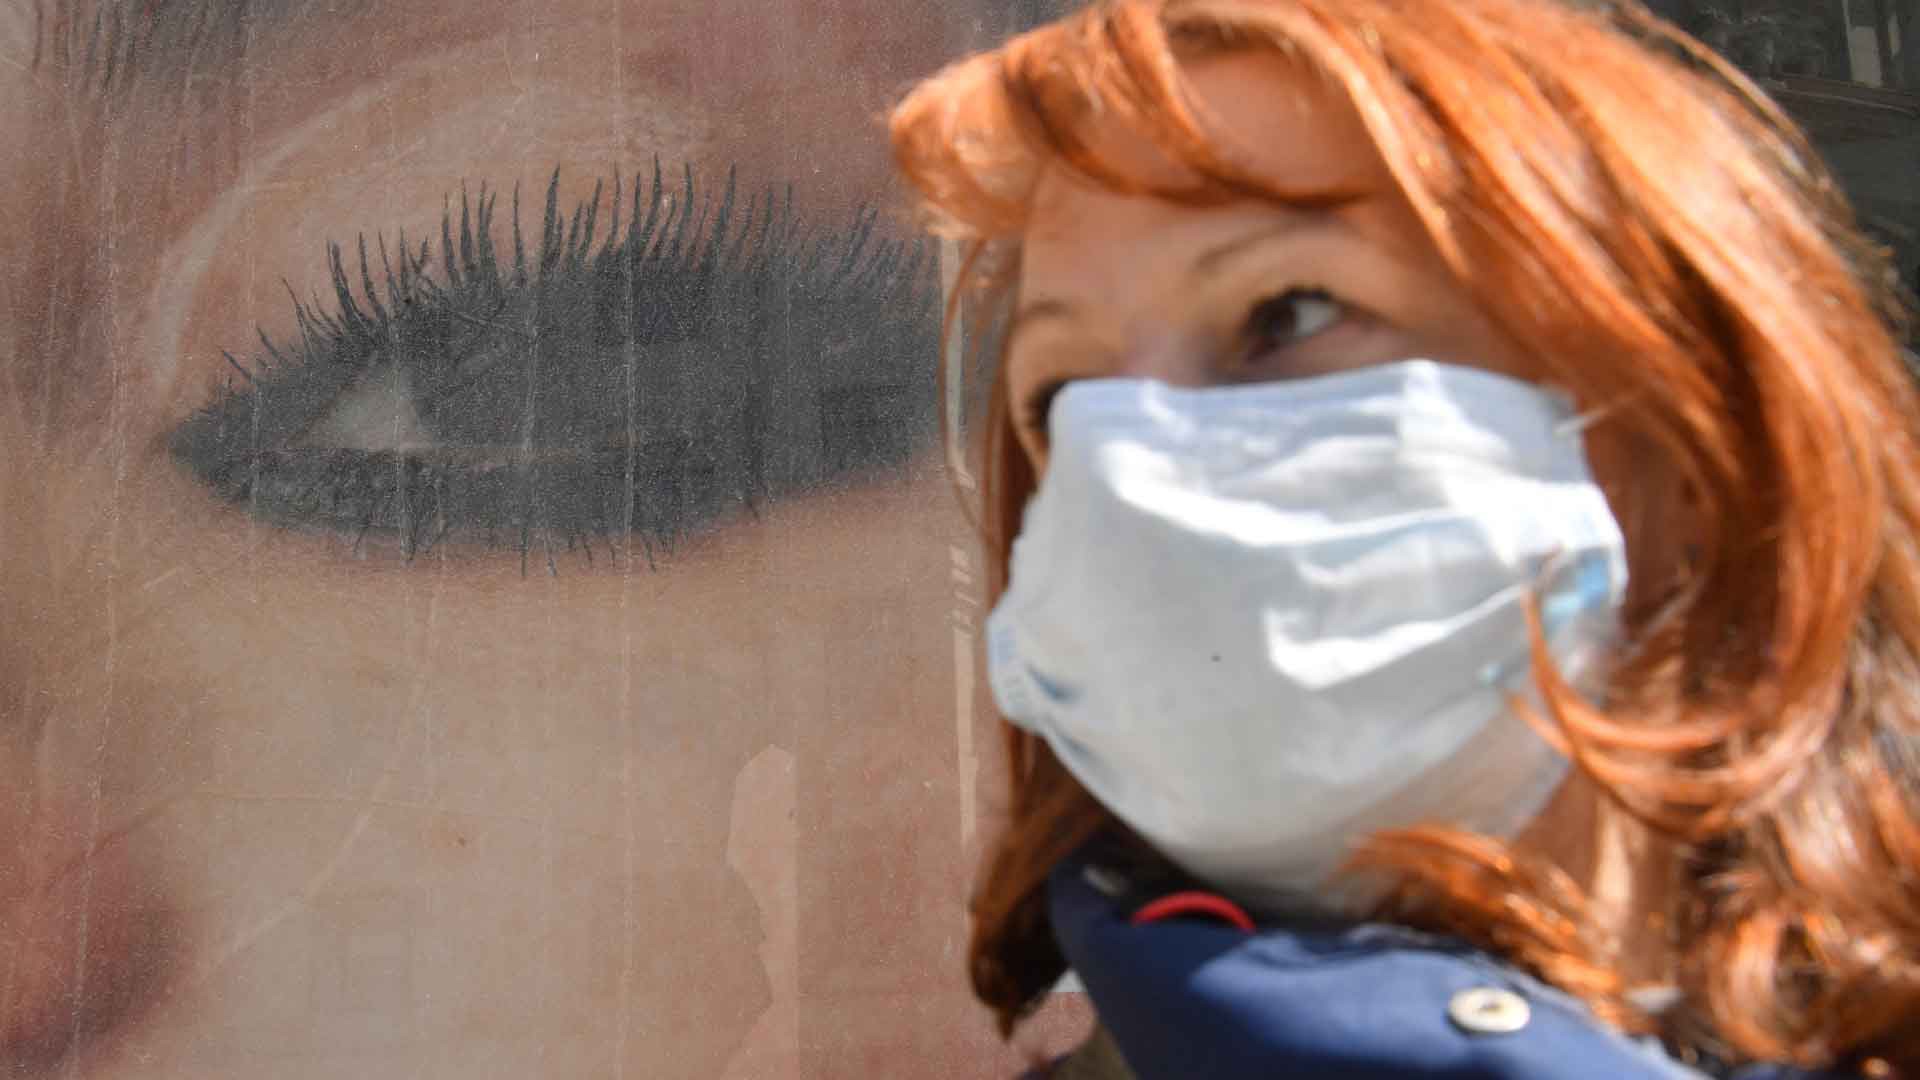 Dailystorm - Задержана москвичка, подозреваемая в распространении фейка о продаже масок из гумпомощи